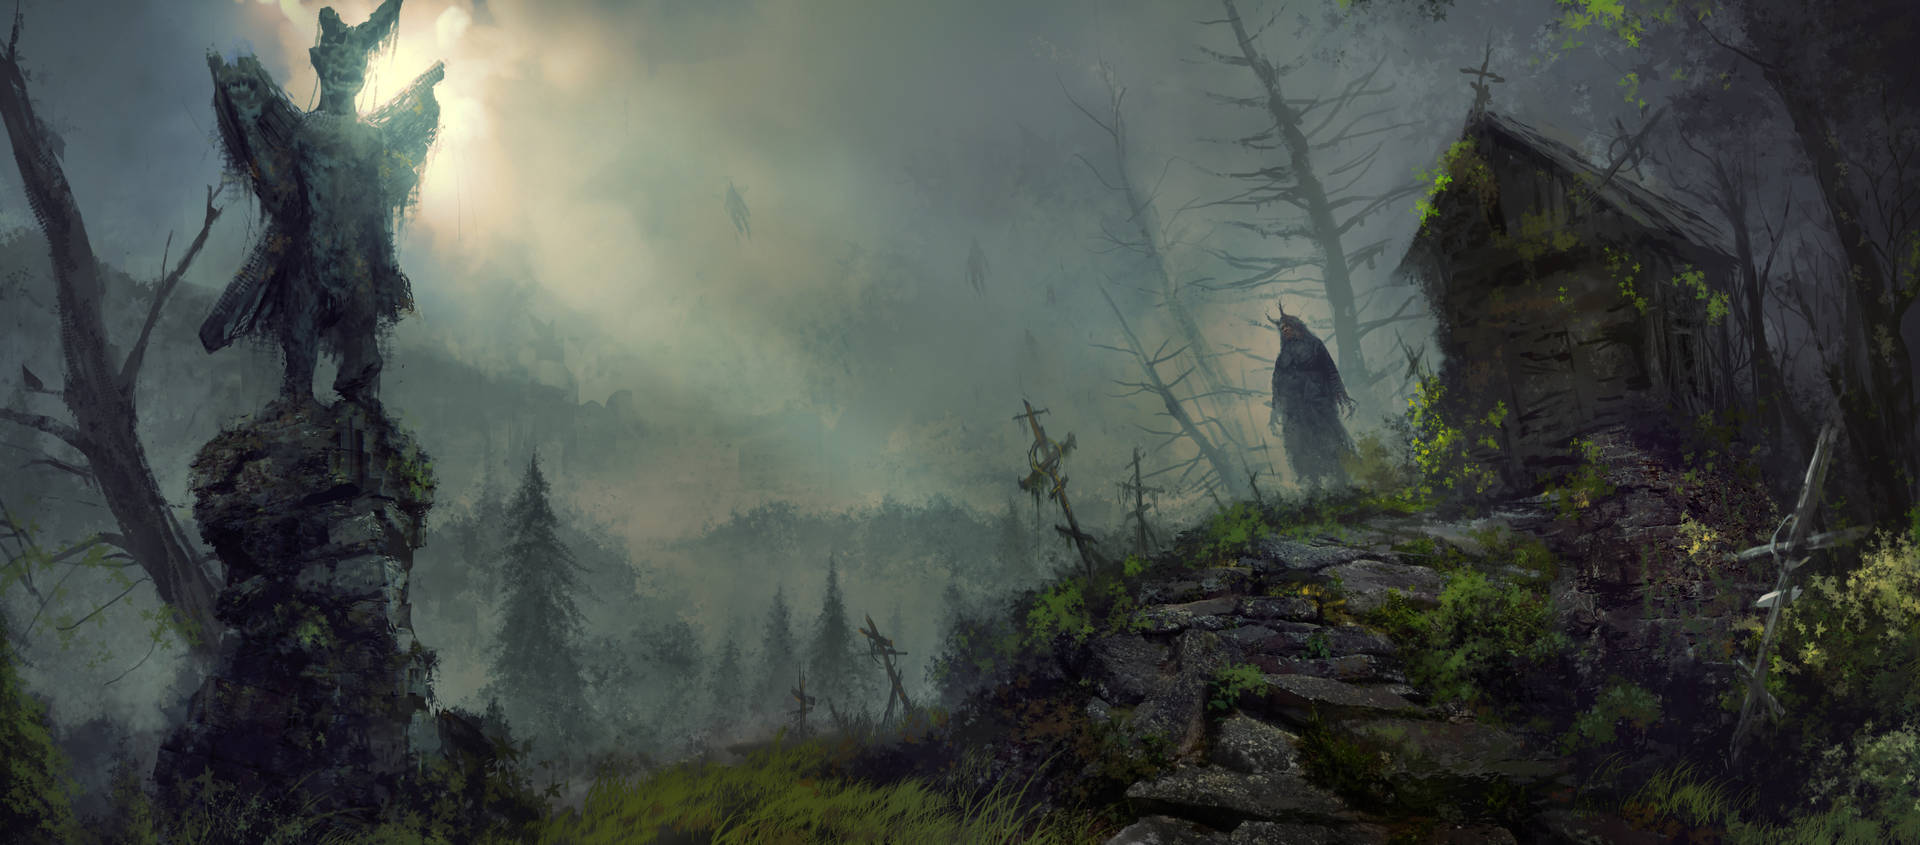 Diablo 4 Forest View Concept Art